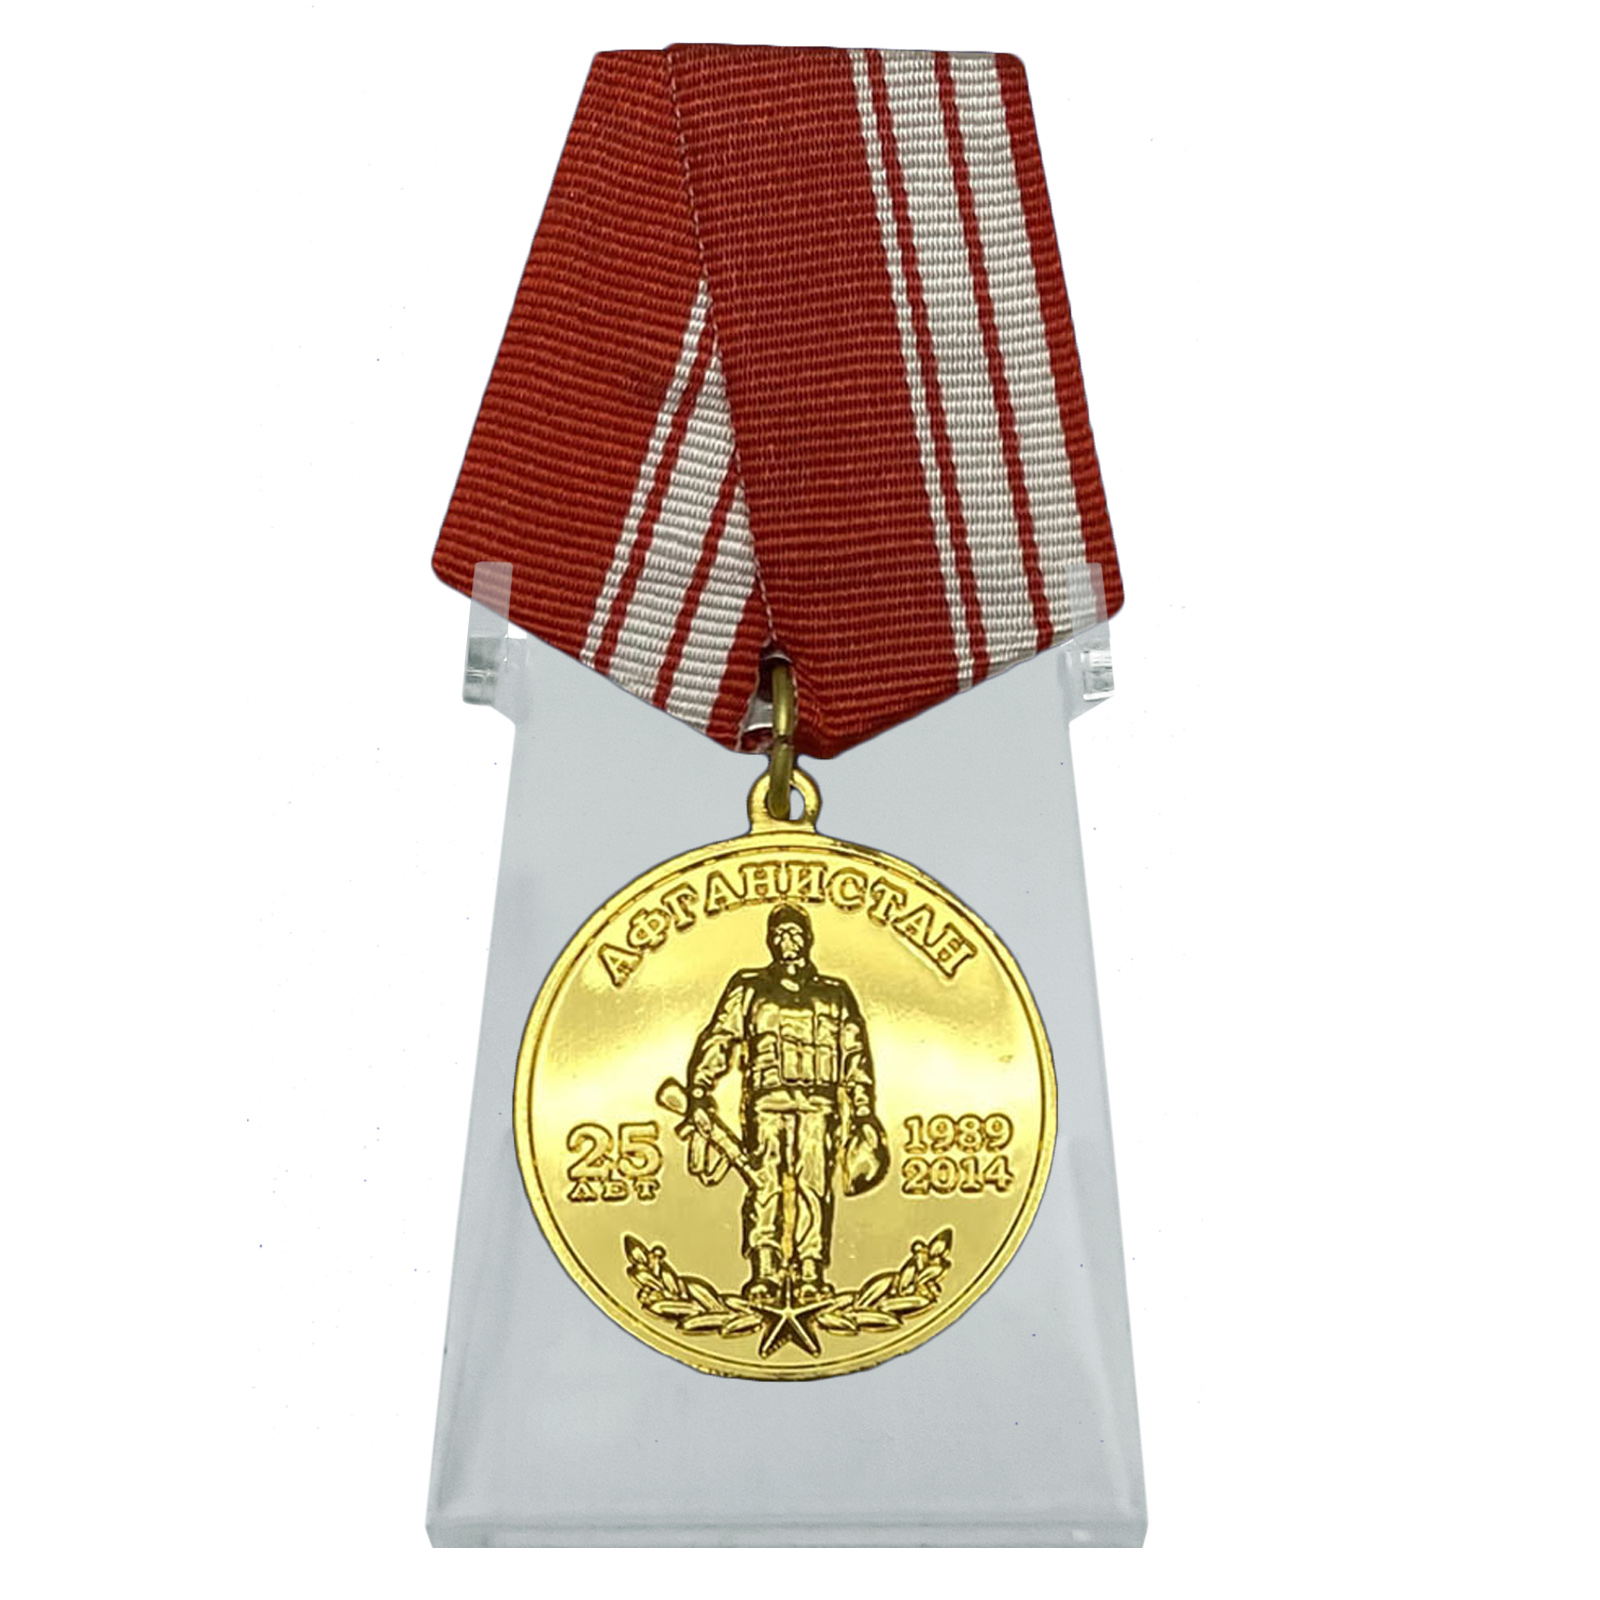 Медаль "Афганистан 25 лет 1989-2014" на подставке